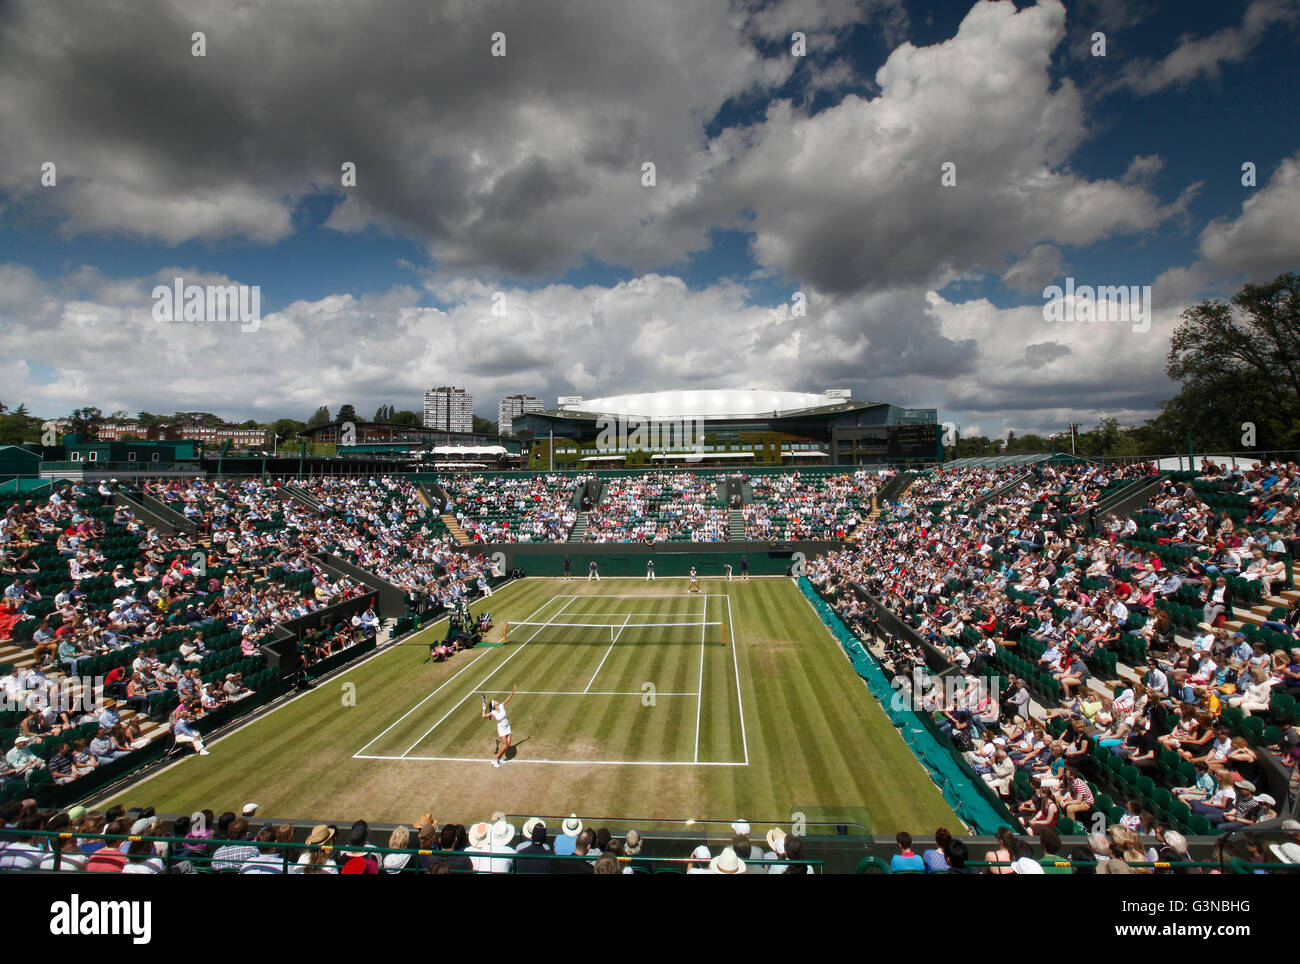 Vista da sopra per mostrare corte 2, corrispondono a Julia Goerges, GER, vs. Ana Ivanovic, SRB nuvole scure, campionati di Wimbledon 2012 Foto Stock